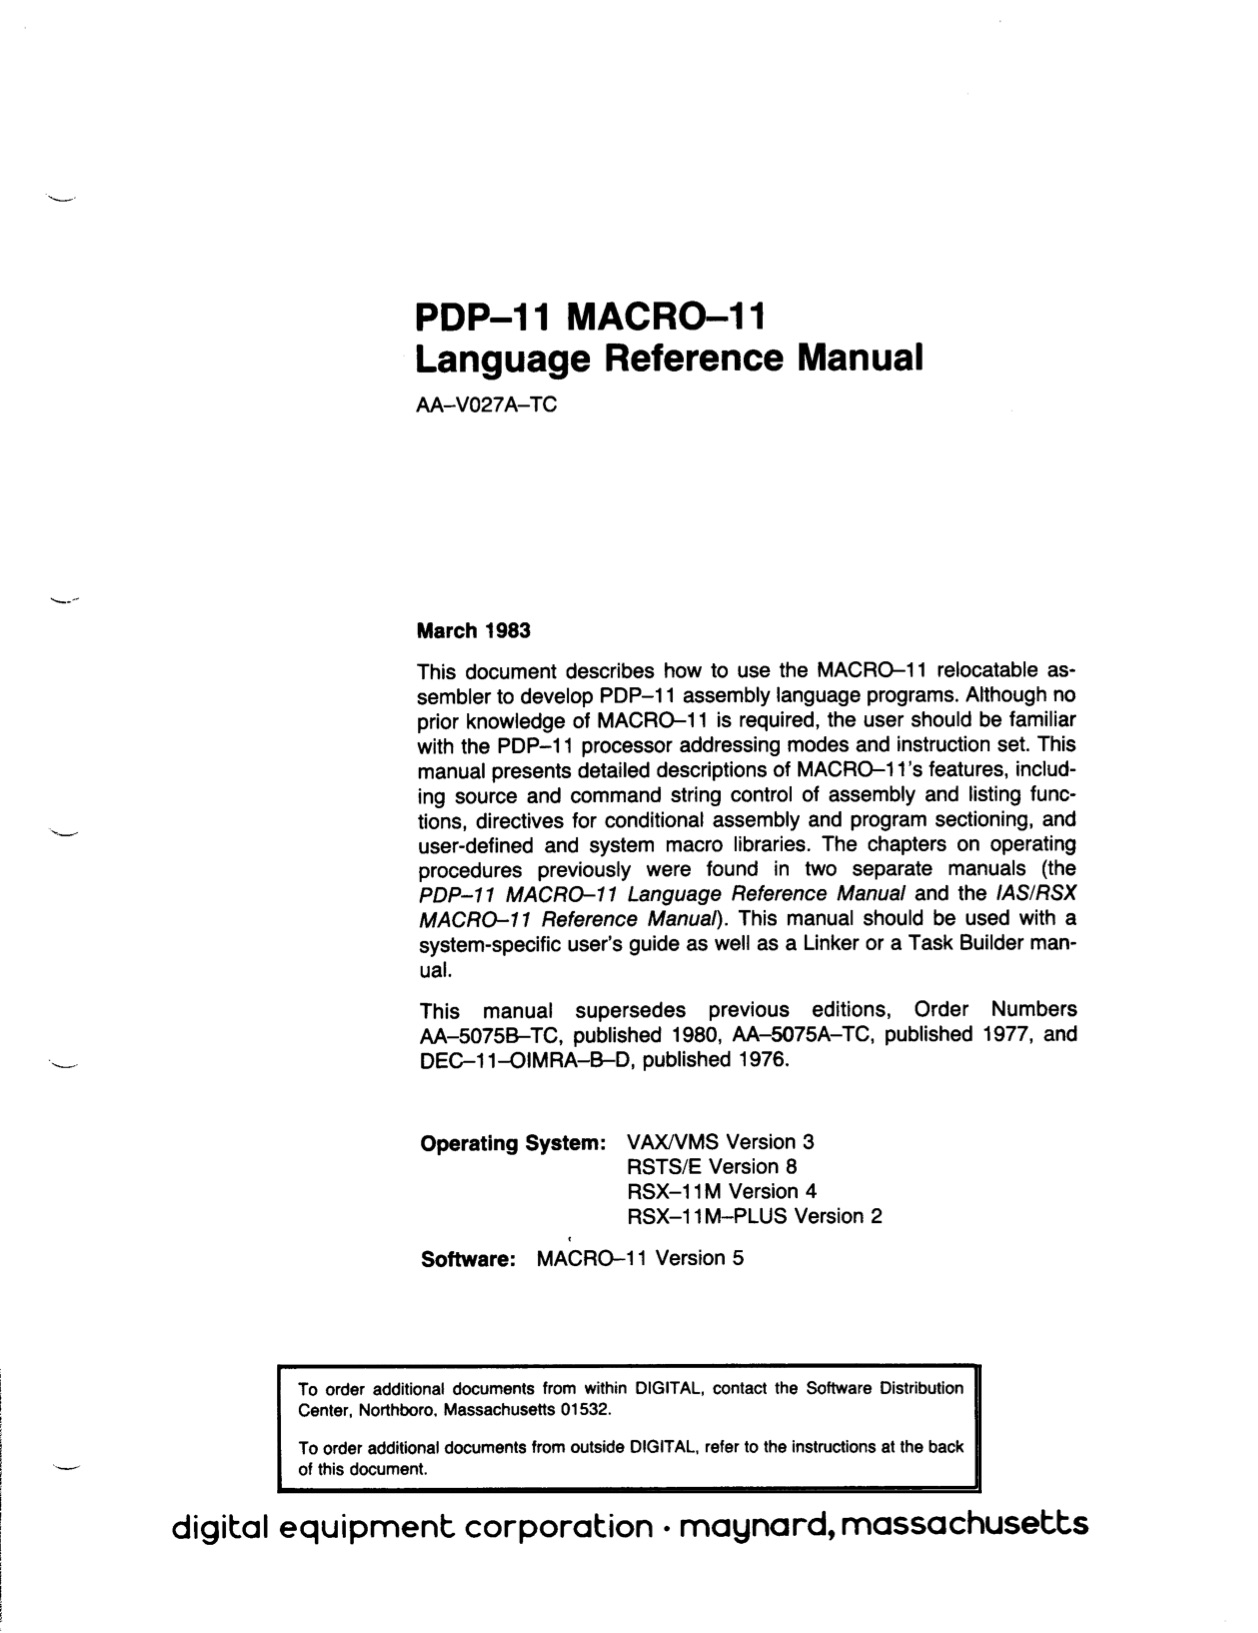 MACRO-11 Language Reference Manual (Mar 1983)